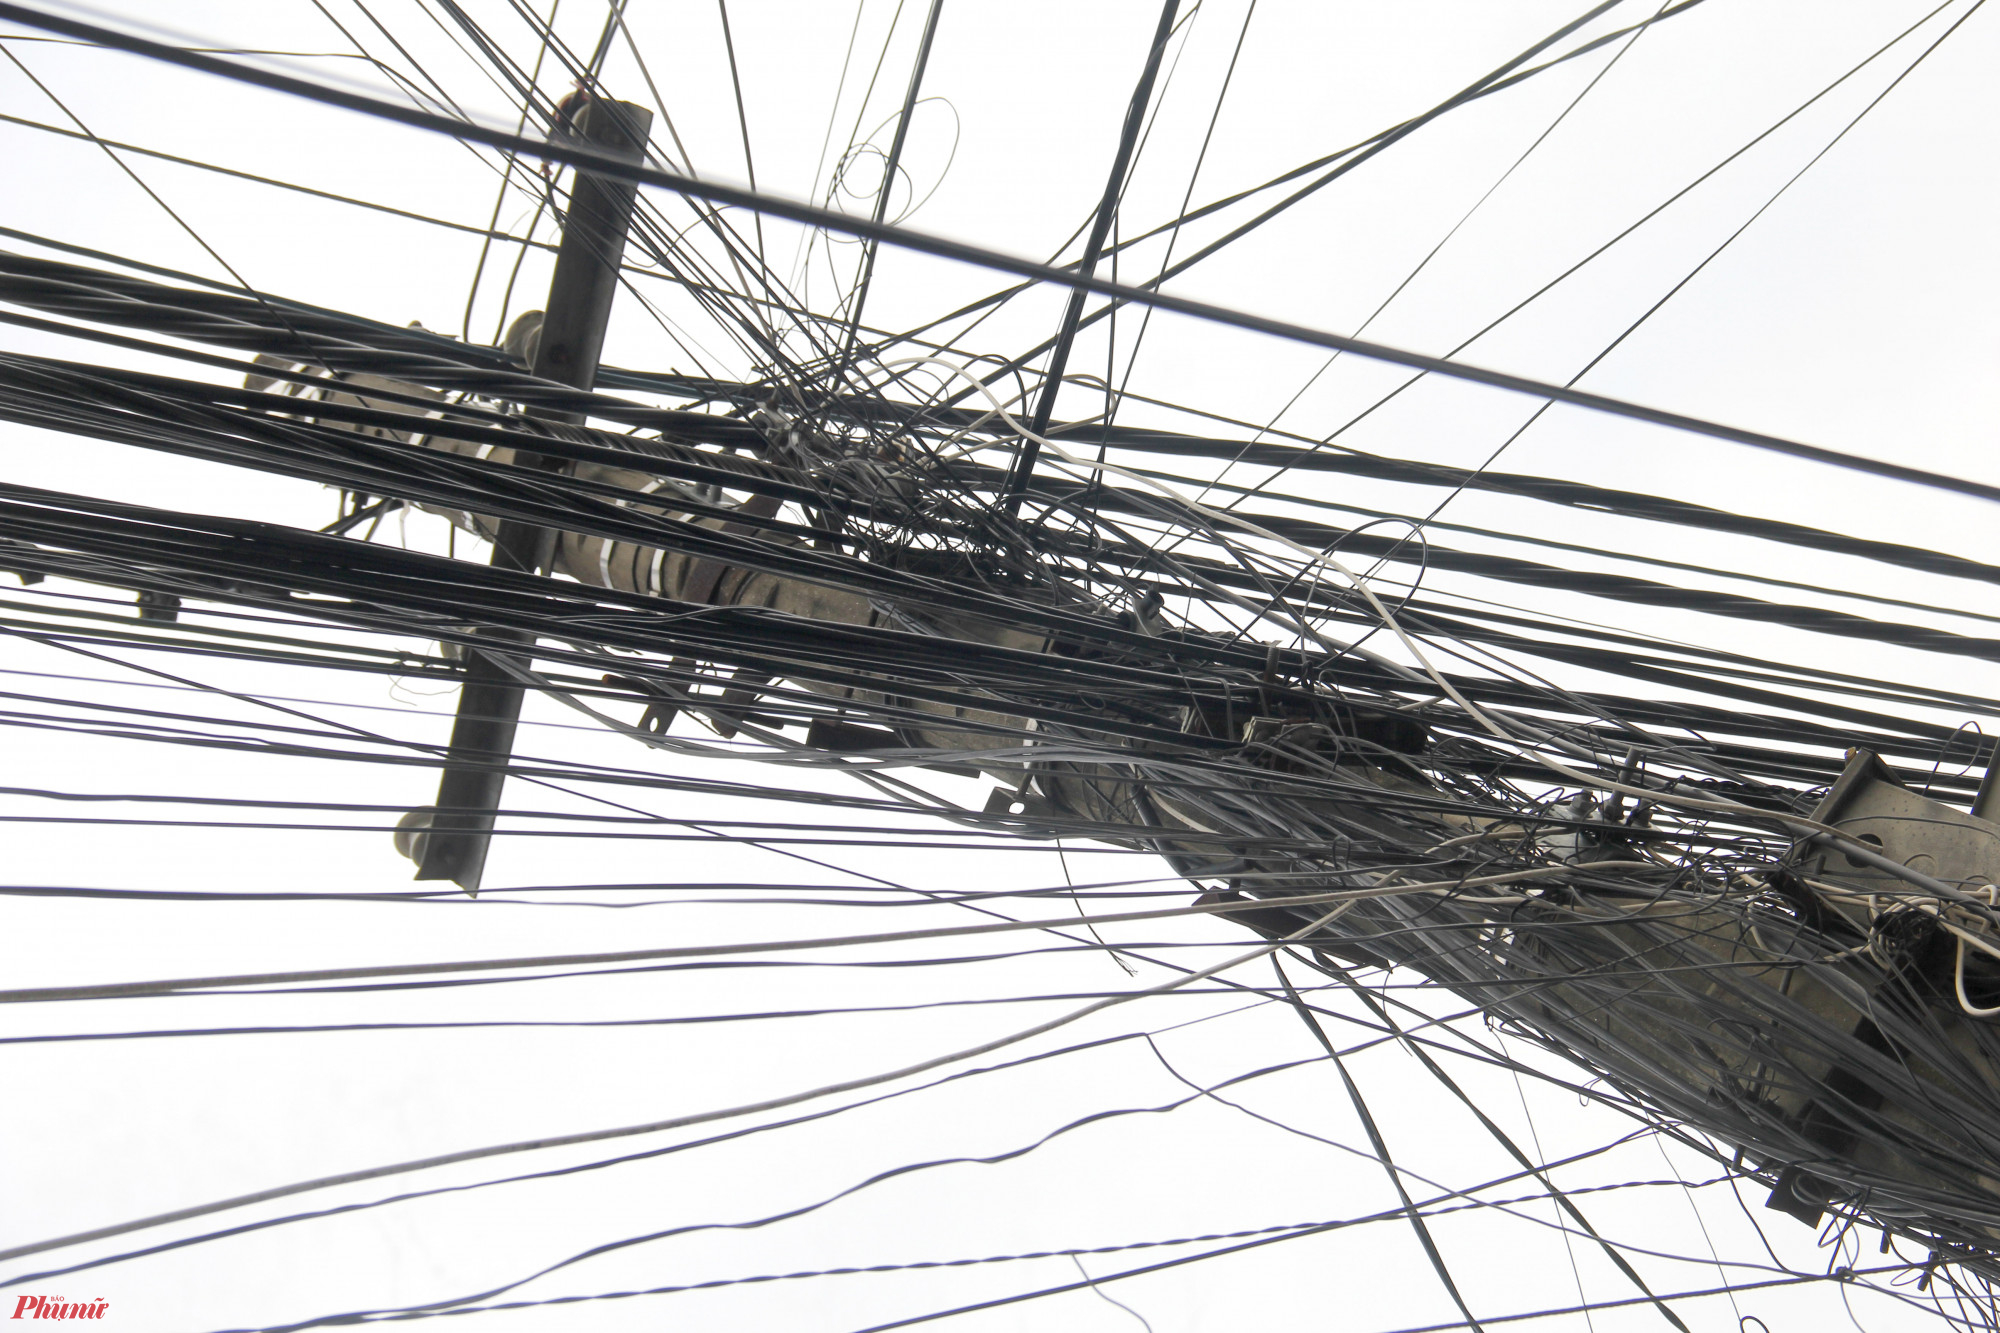 Hệ thống trụ điện trên nhiều tuyến phối ở TP. Vinh (Nghệ An) hiện không chỉ đỡ hệ thống dây điện truyền tải, mà còn phải cõng thêm hàng chục, hàng trăm loại cáp viễn thông.